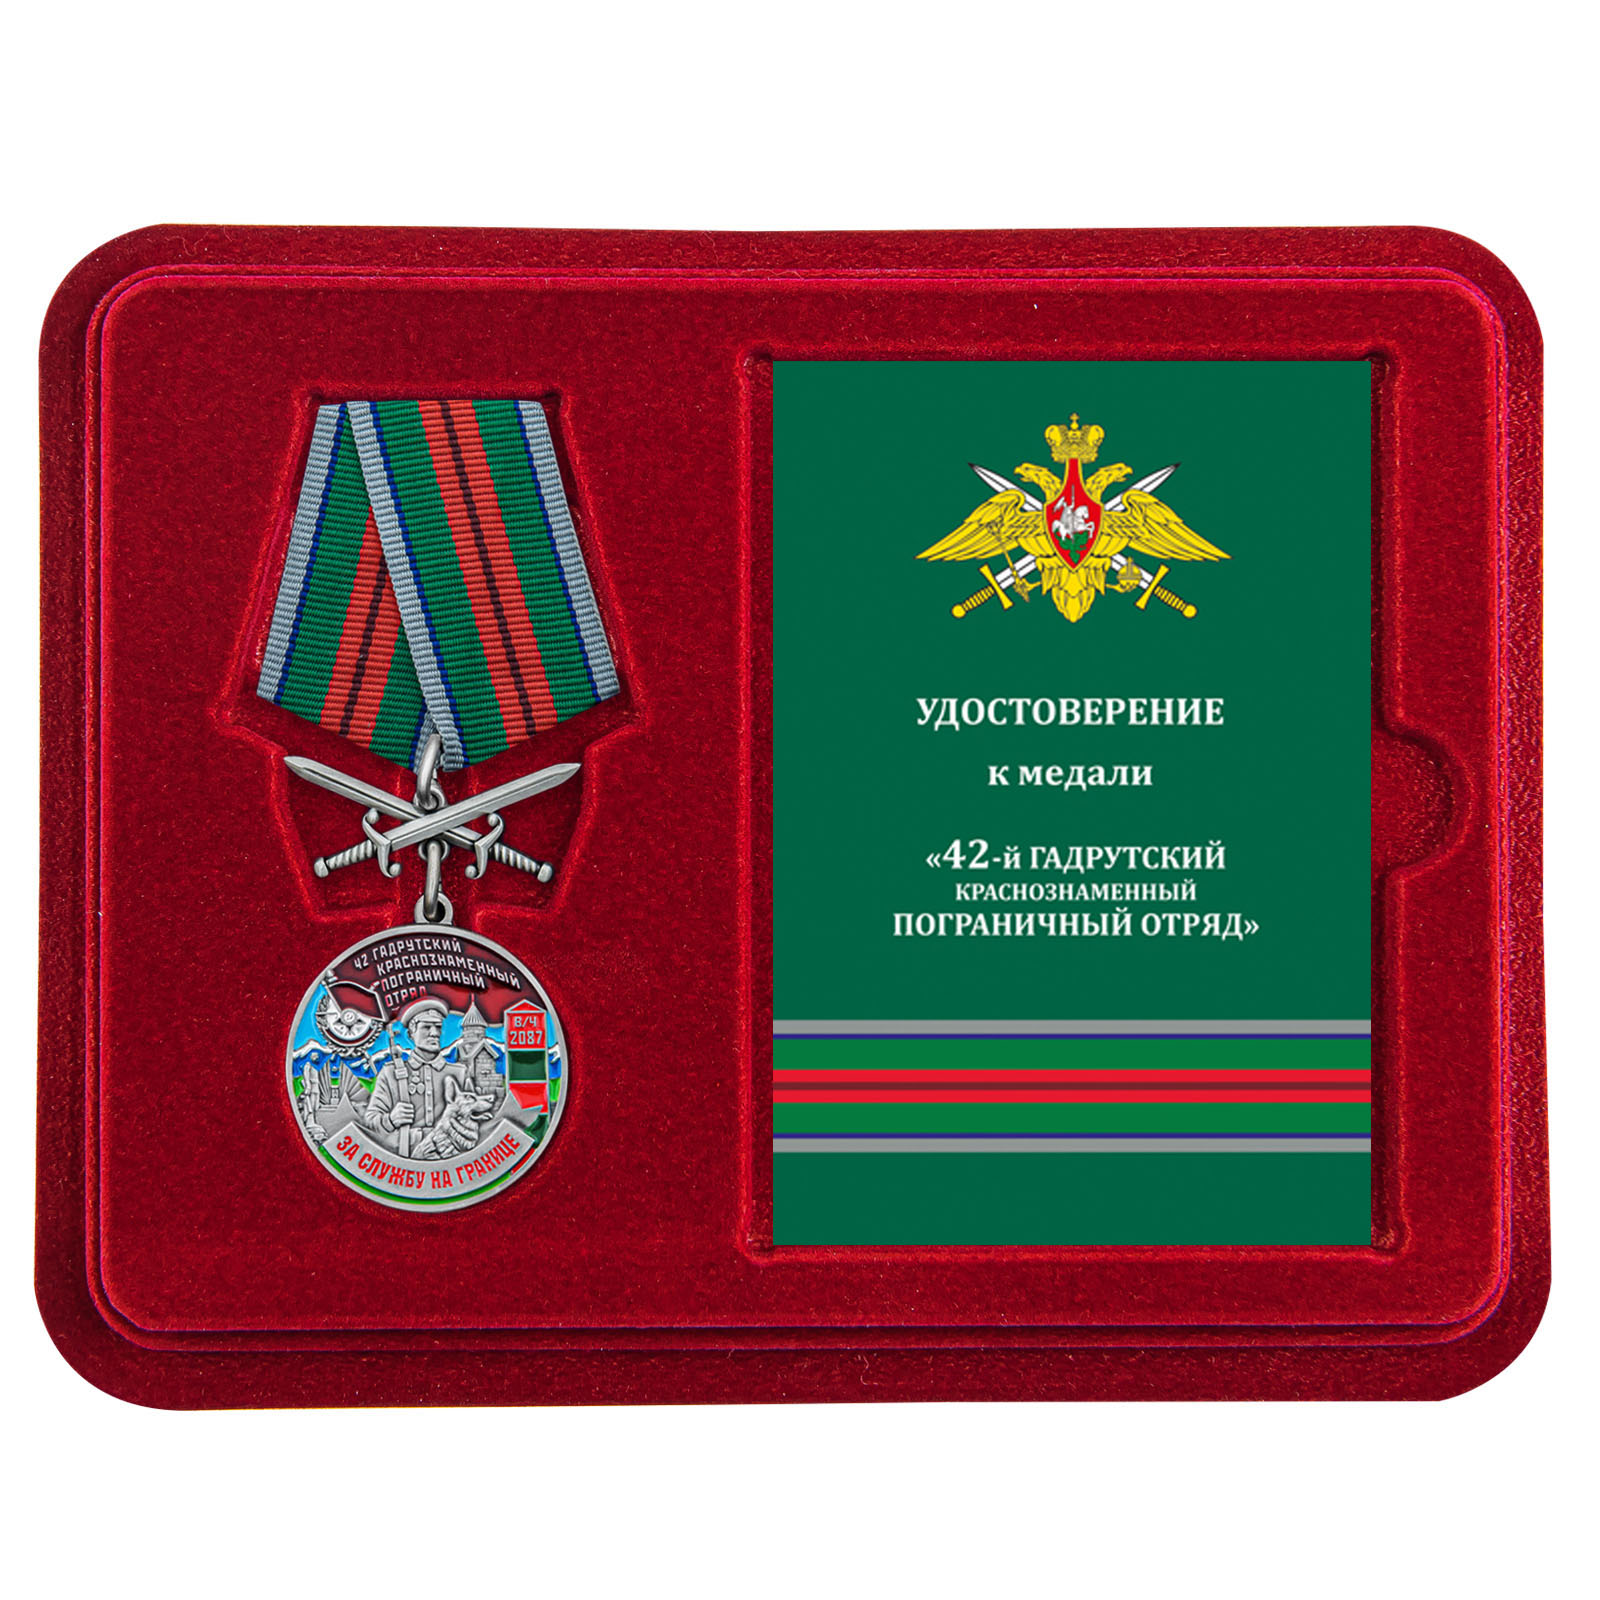 Купить медаль За службу в Гадрутском пограничном отряде с доставкой